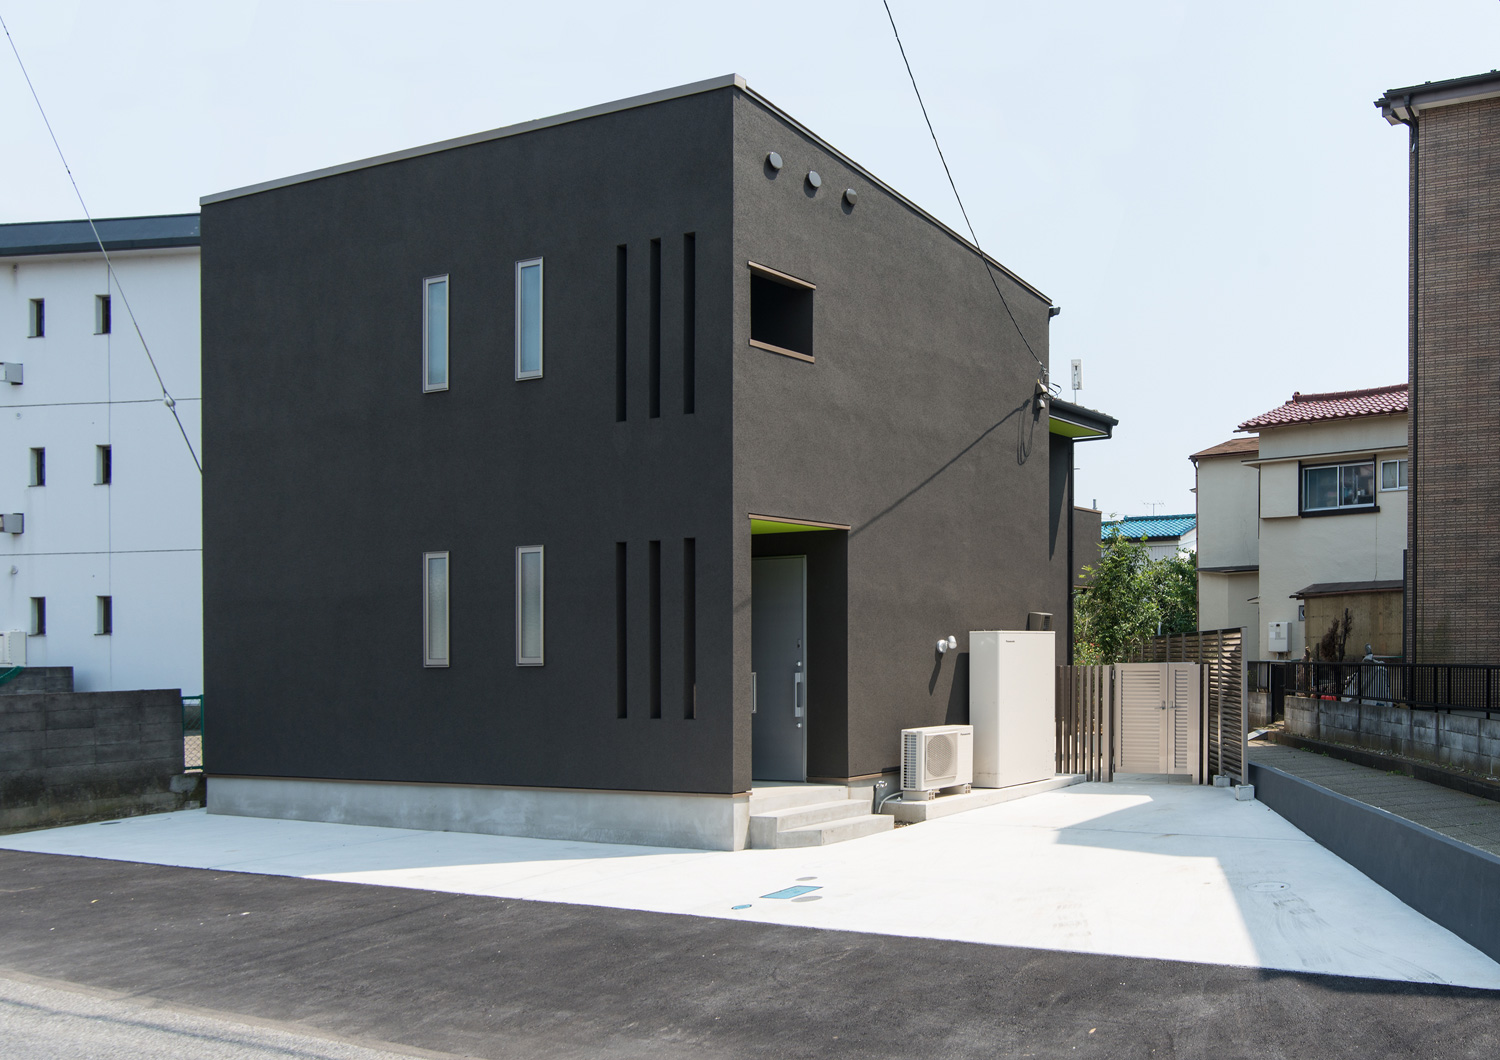 黒いキューブ状の外観の住まい・デザイン住宅